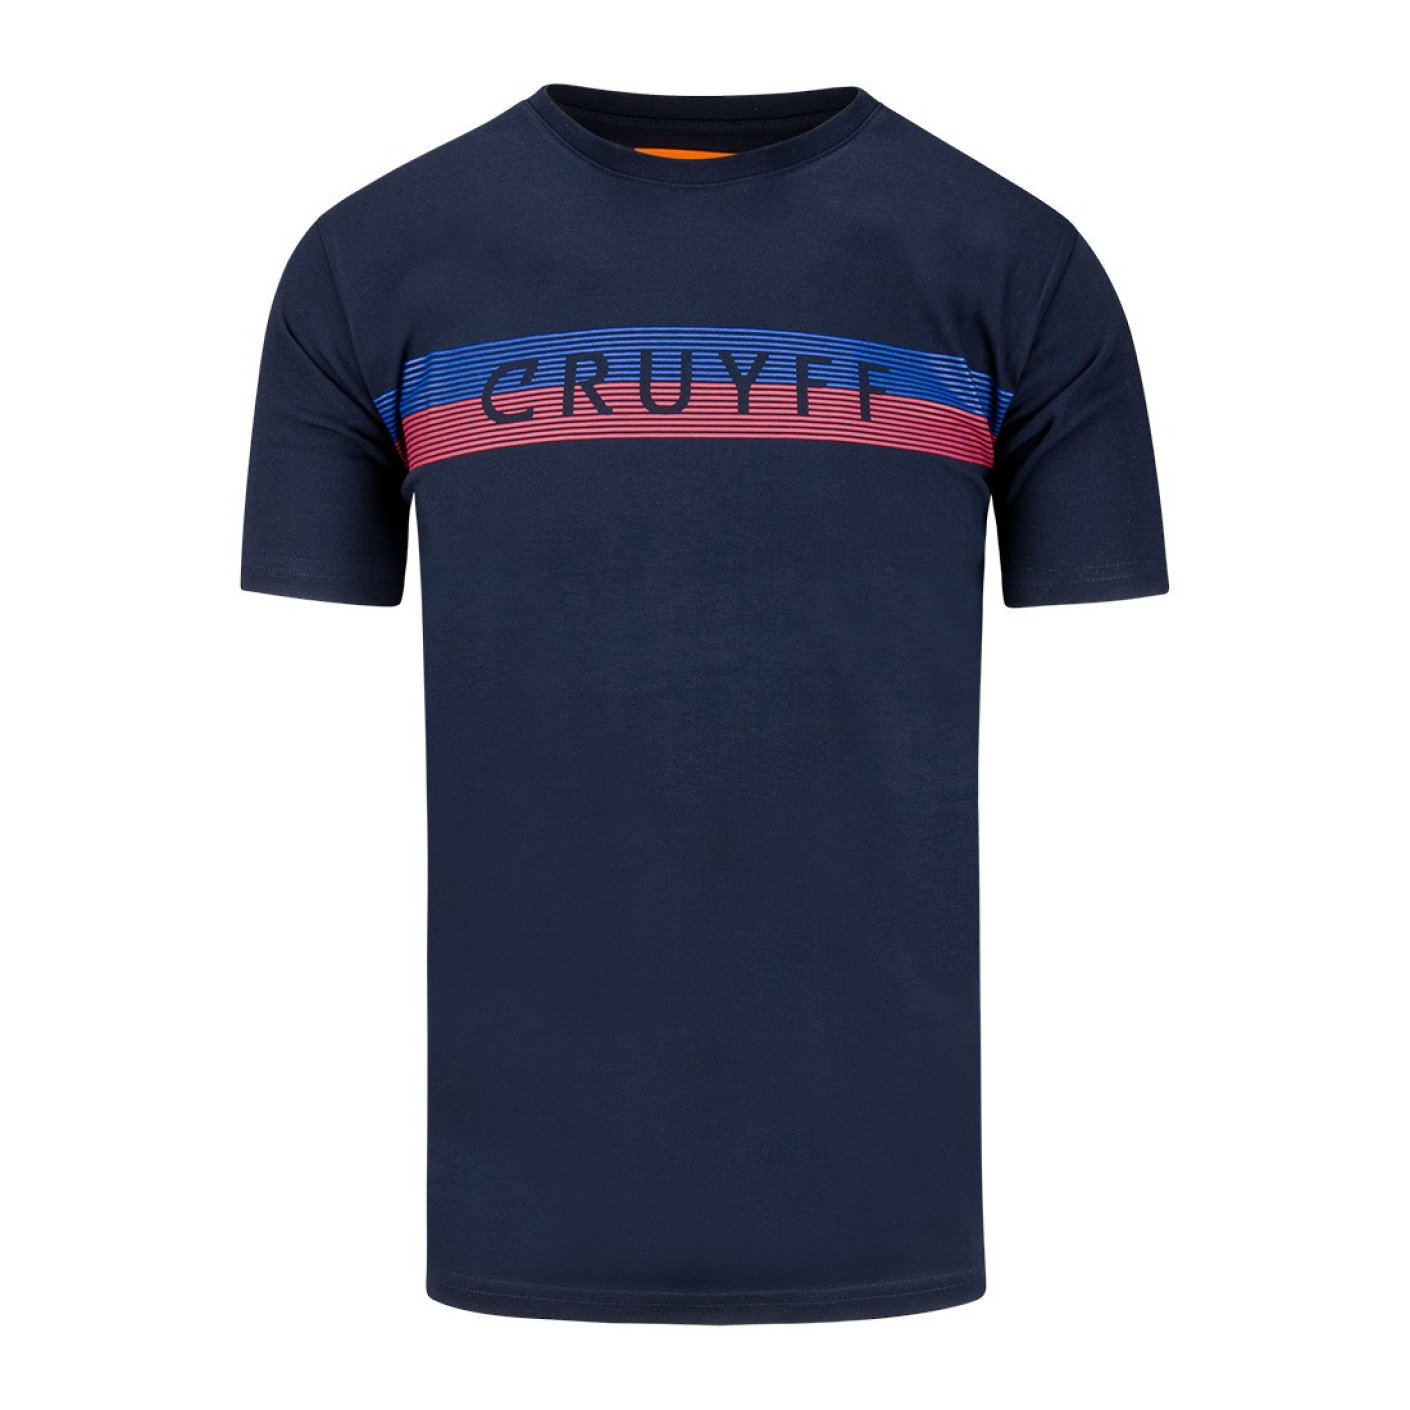 Cruyff Hellenburg SS T-Shirt Donkerblauw